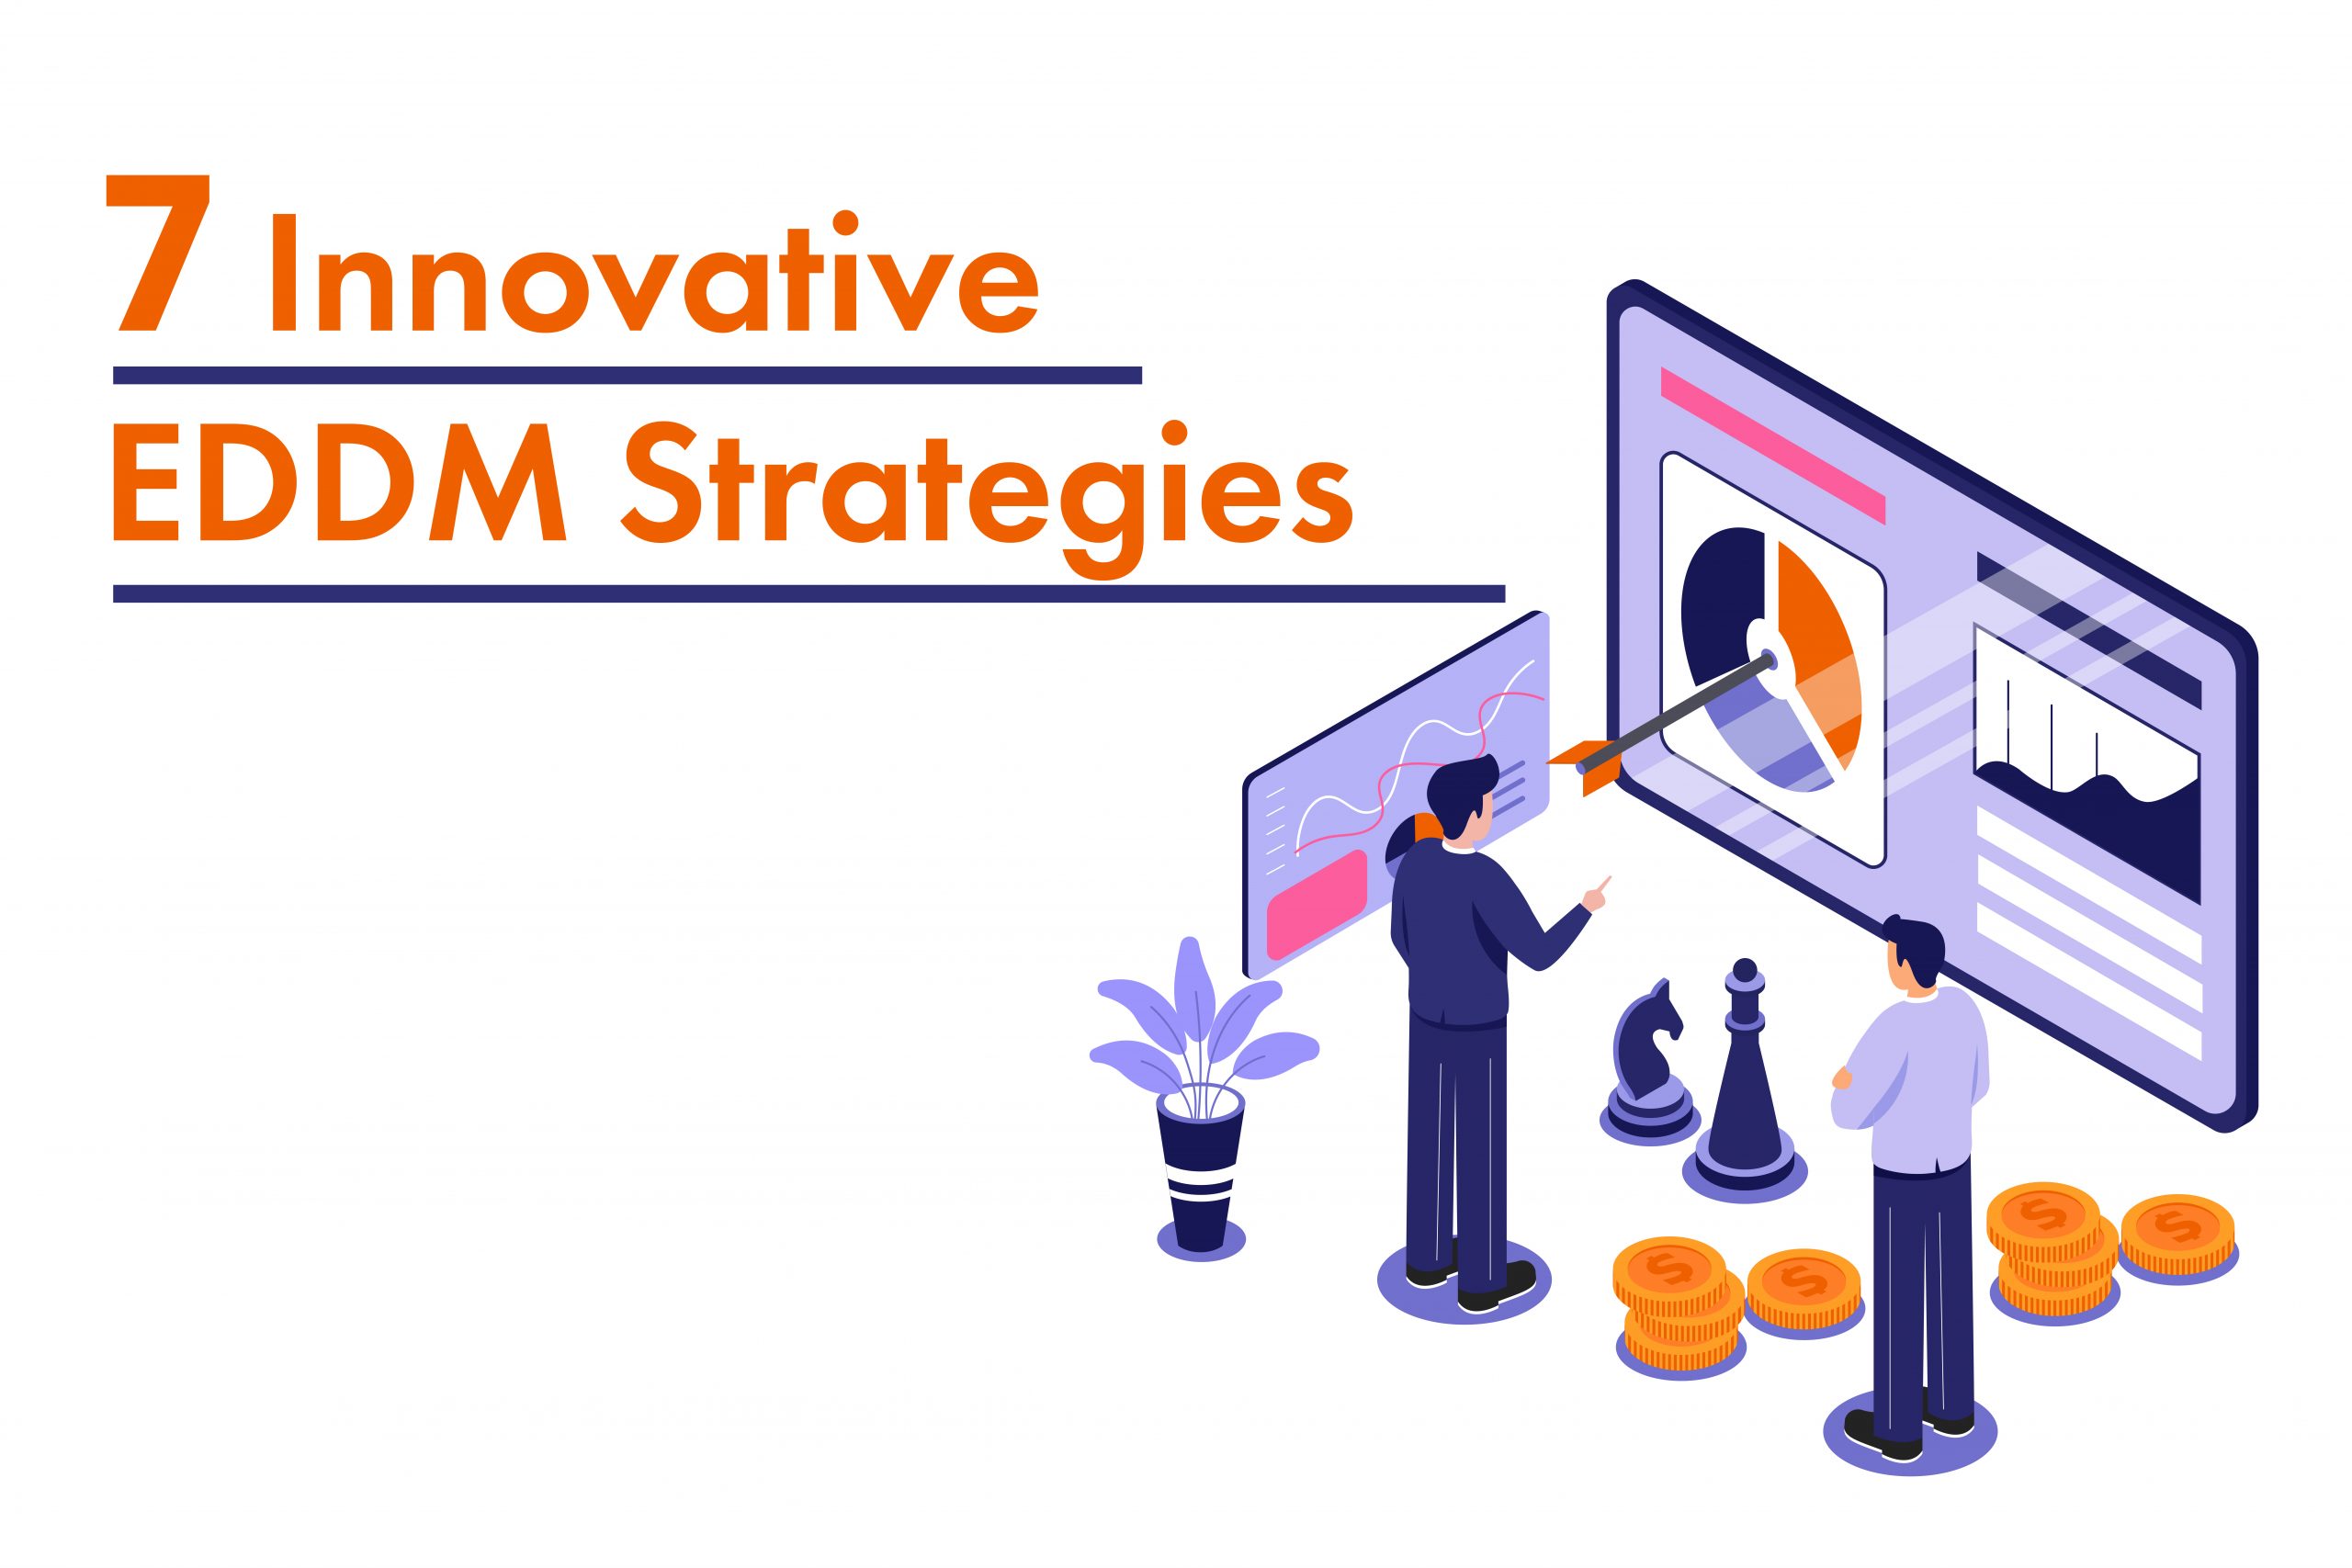 EDDM strategies